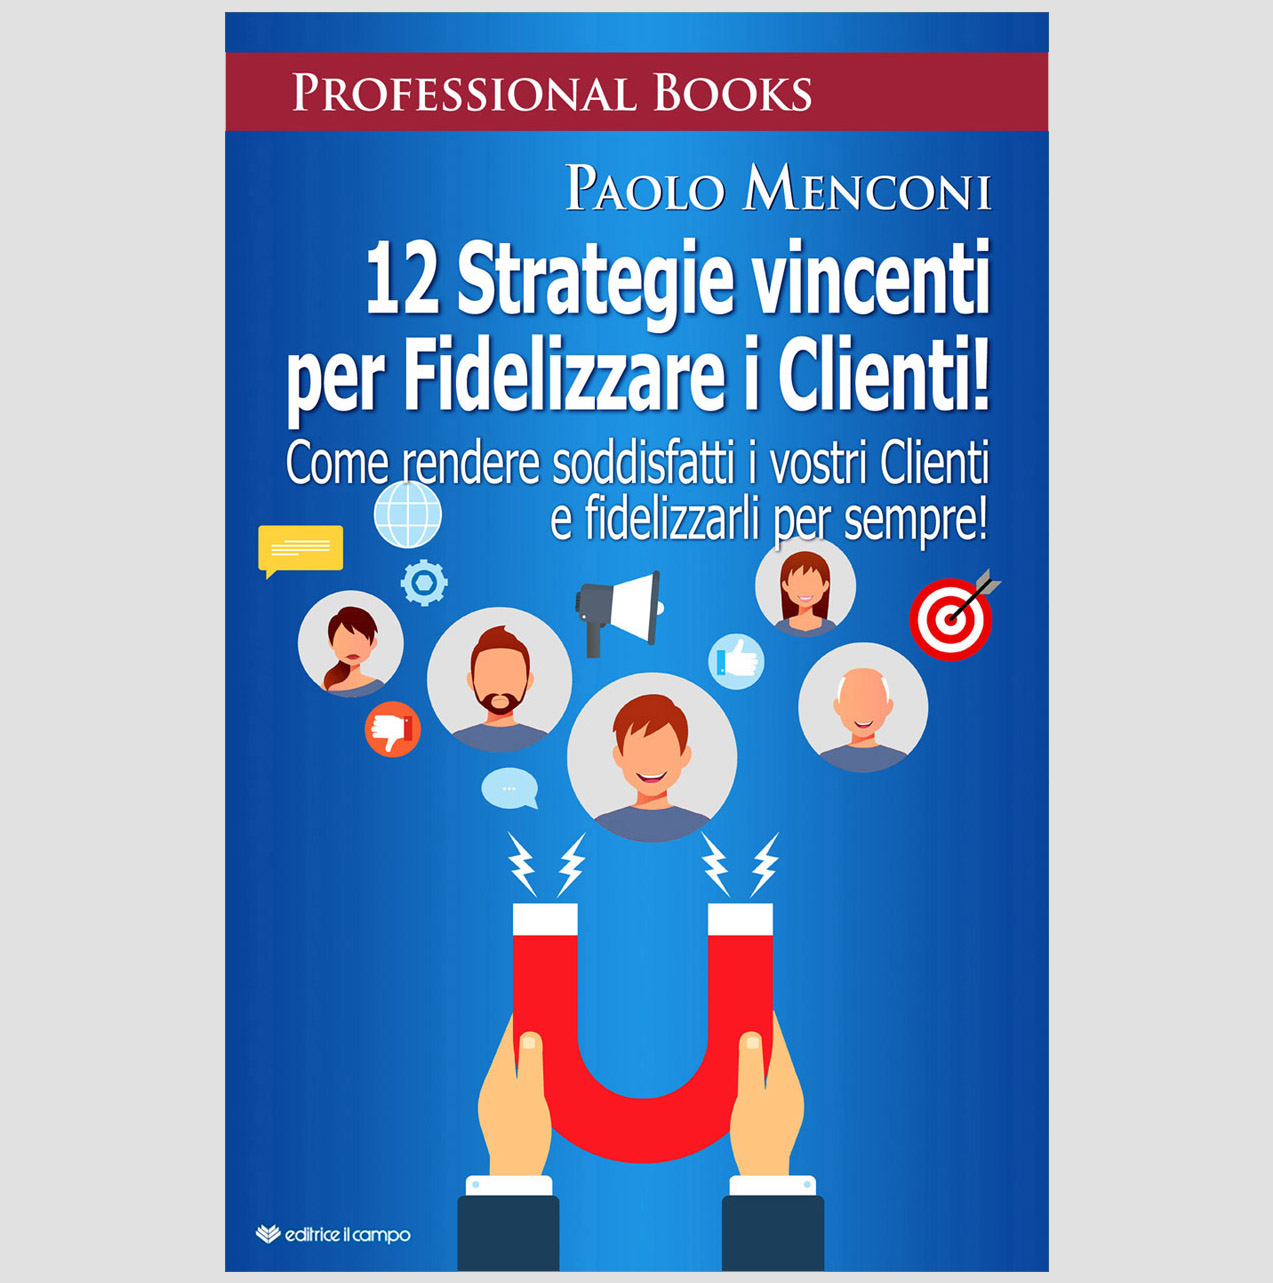 Foto 1 - Paolo Menconi svela nel nuovo libro, le “12 Strategie vincenti per Fidelizzare i Clienti!”